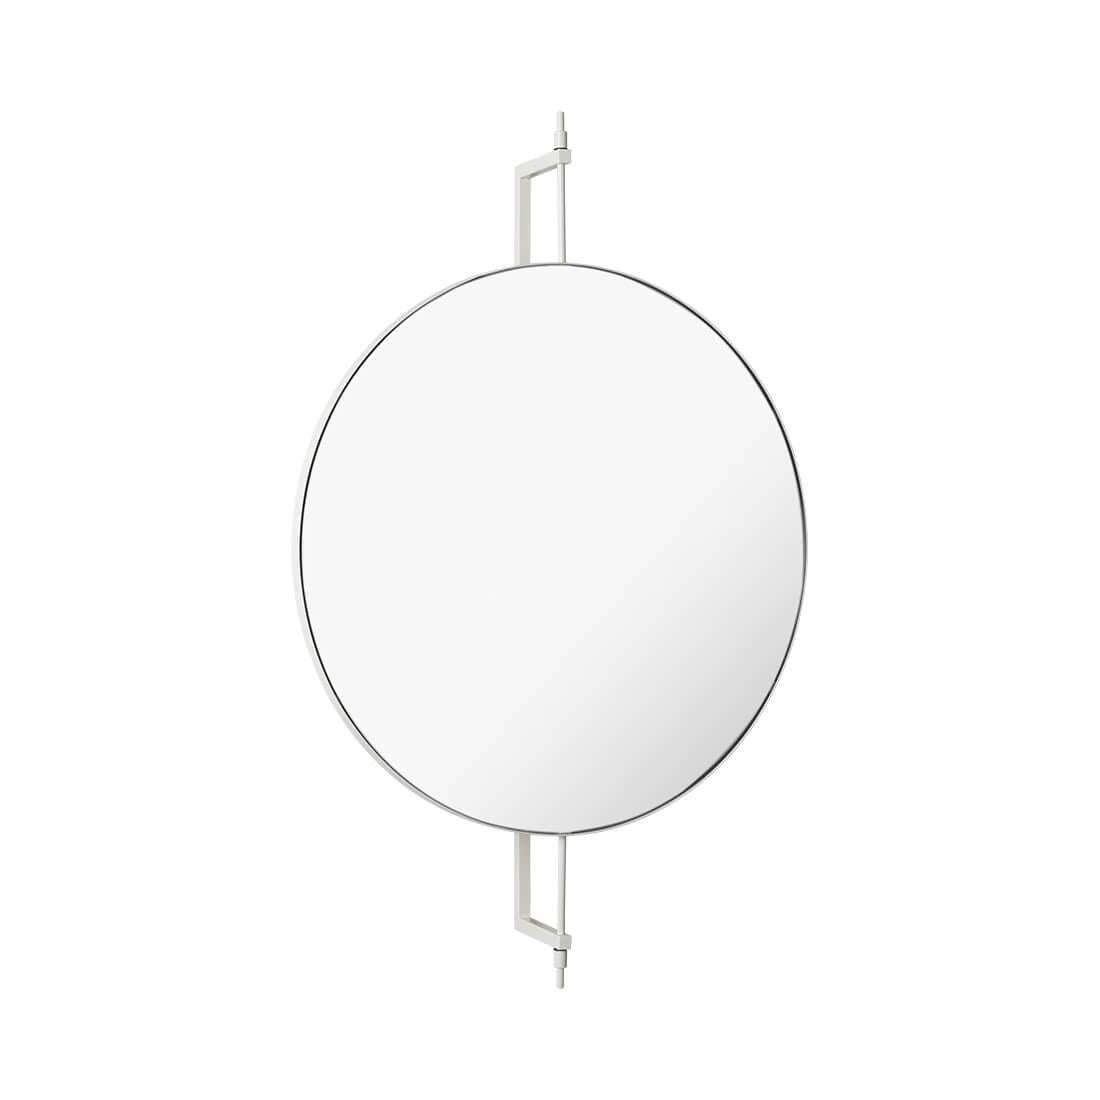 Miroir circulaire rotatif par Kristina Dam Studio
Matériaux : Acier inoxydable avec revêtement en poudre. Miroir.
Disponible également dans d'autres couleurs. 
Dimensions : 13,5 x 60 x H 91 cm : 13,5 x 60 x H 91cm.

La collection de meubles